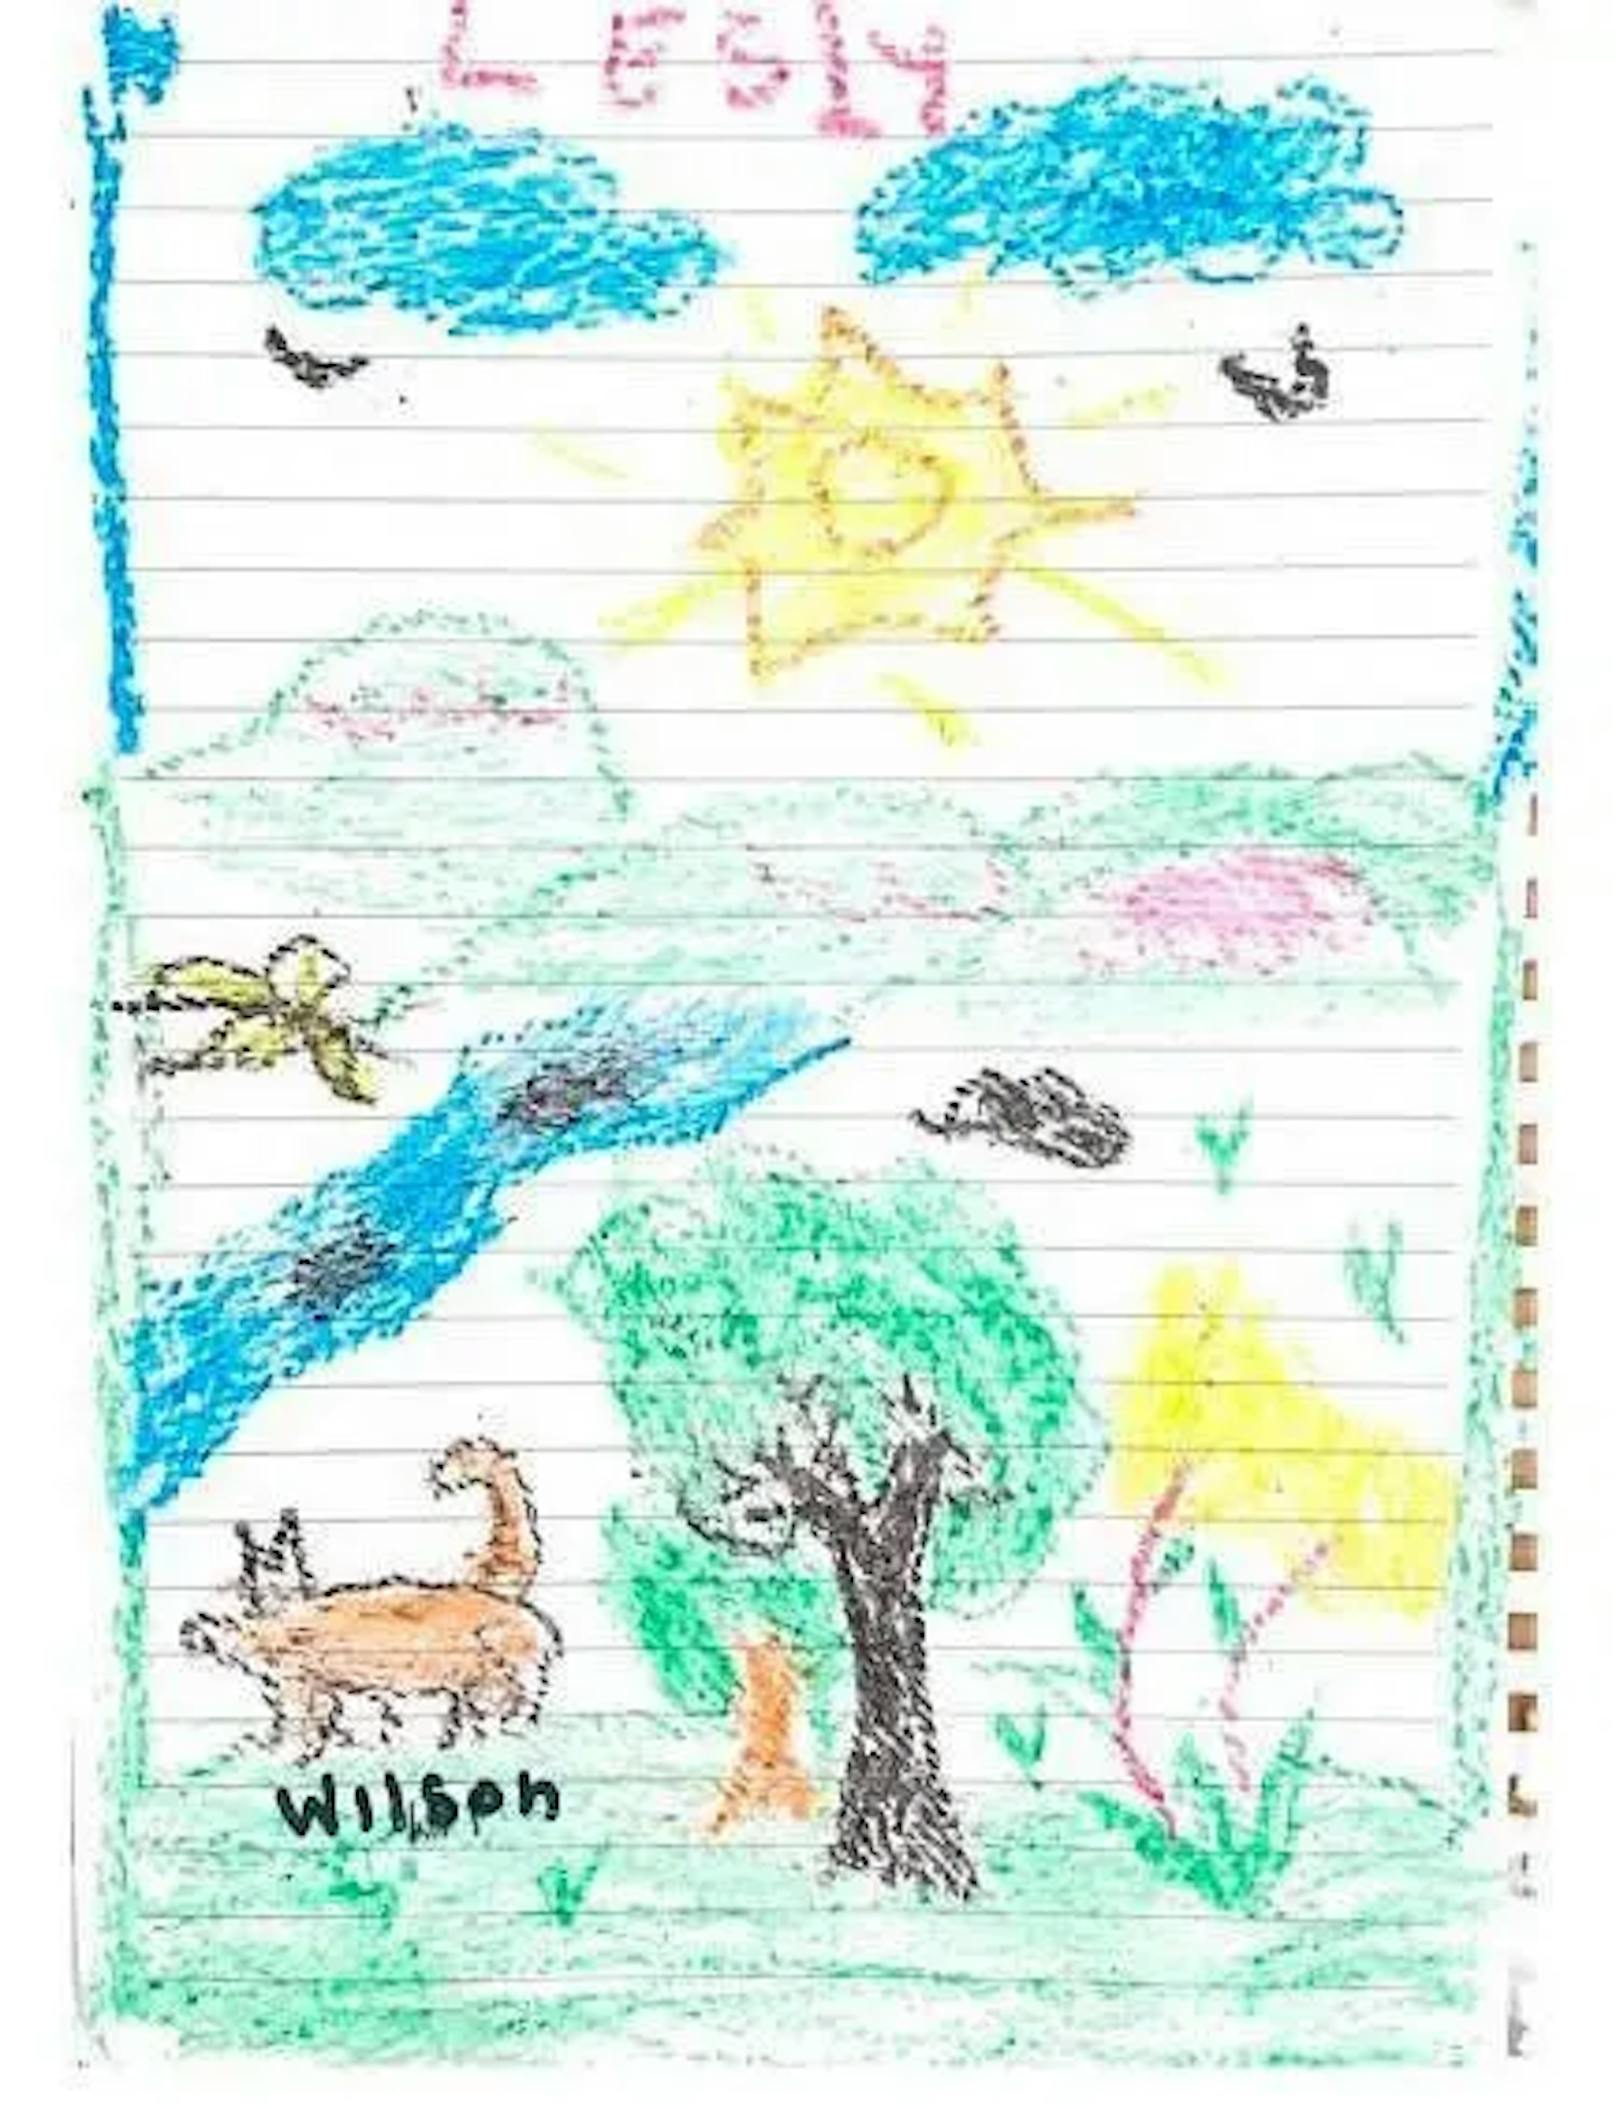 Lesly (13) schickt aus dem Spital gute Wünsche für Wilson. Ihre Zeichnung gab sie dem Hundeführer, der jetzt noch verzweifelt nach seinem Hund im Dschungel sucht.